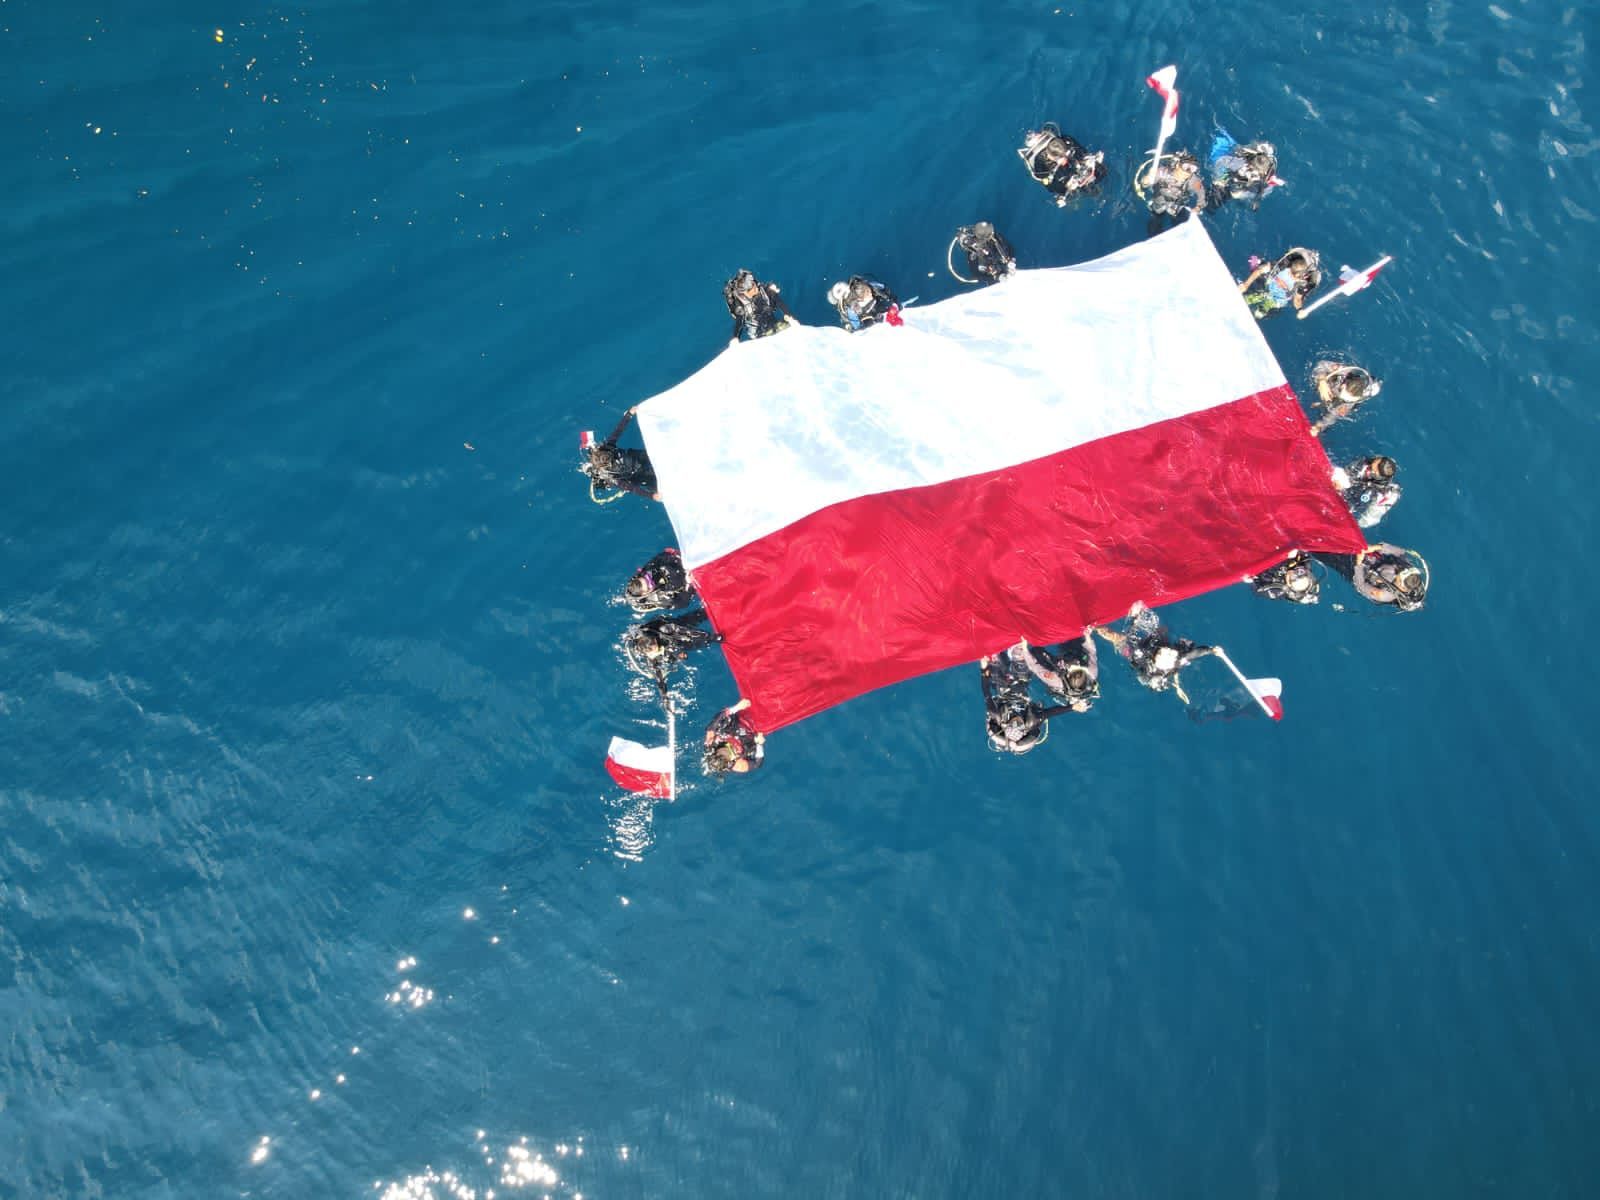 Bendera Merah Putih dikibarkan di bawah laut Berau kedalaman 17 meter